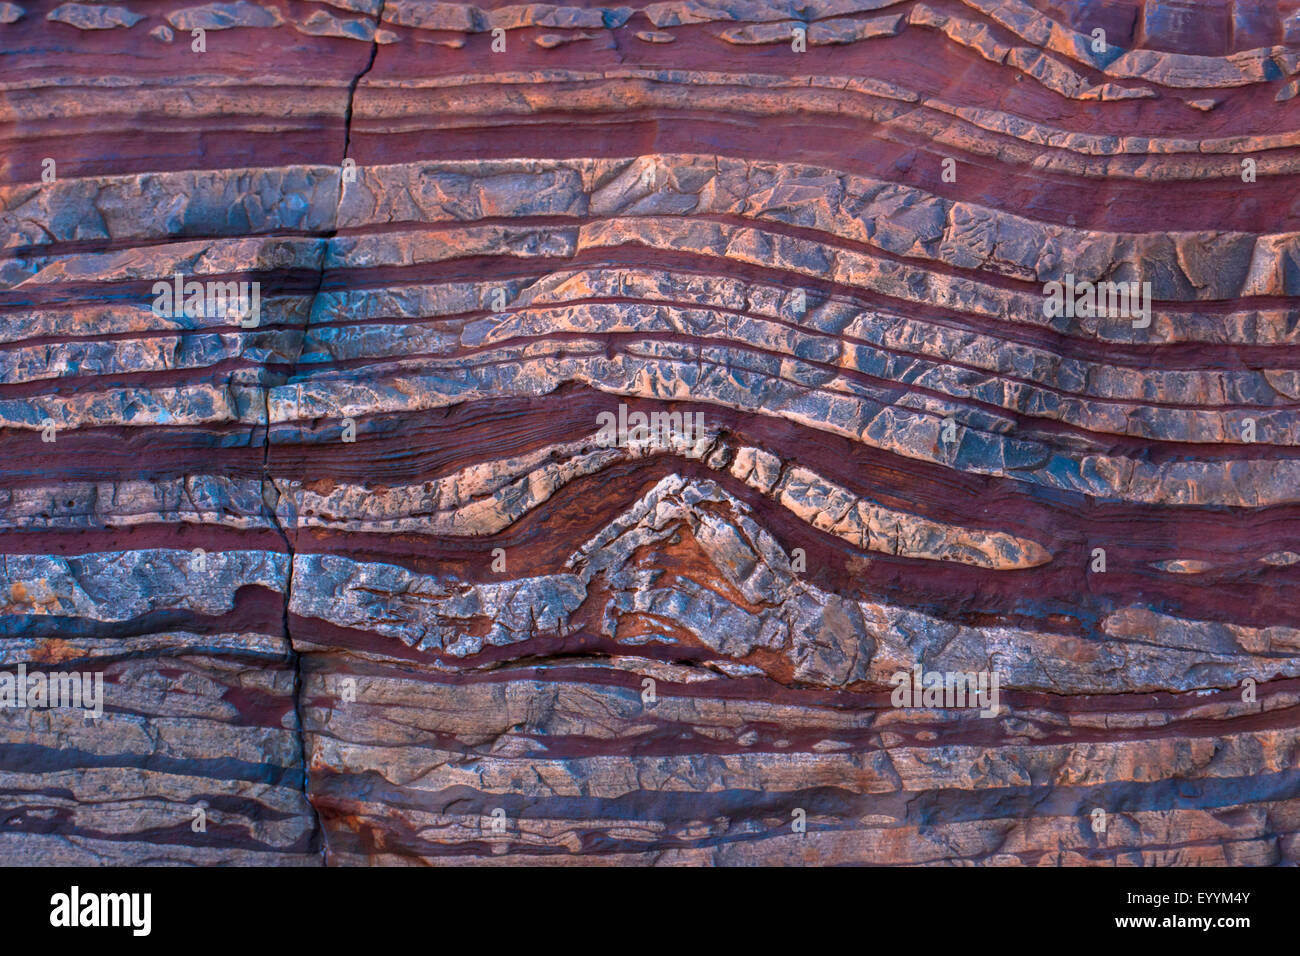 Les couches de minerai de fer, l'Australie, Australie occidentale, le parc national de Karijini Banque D'Images